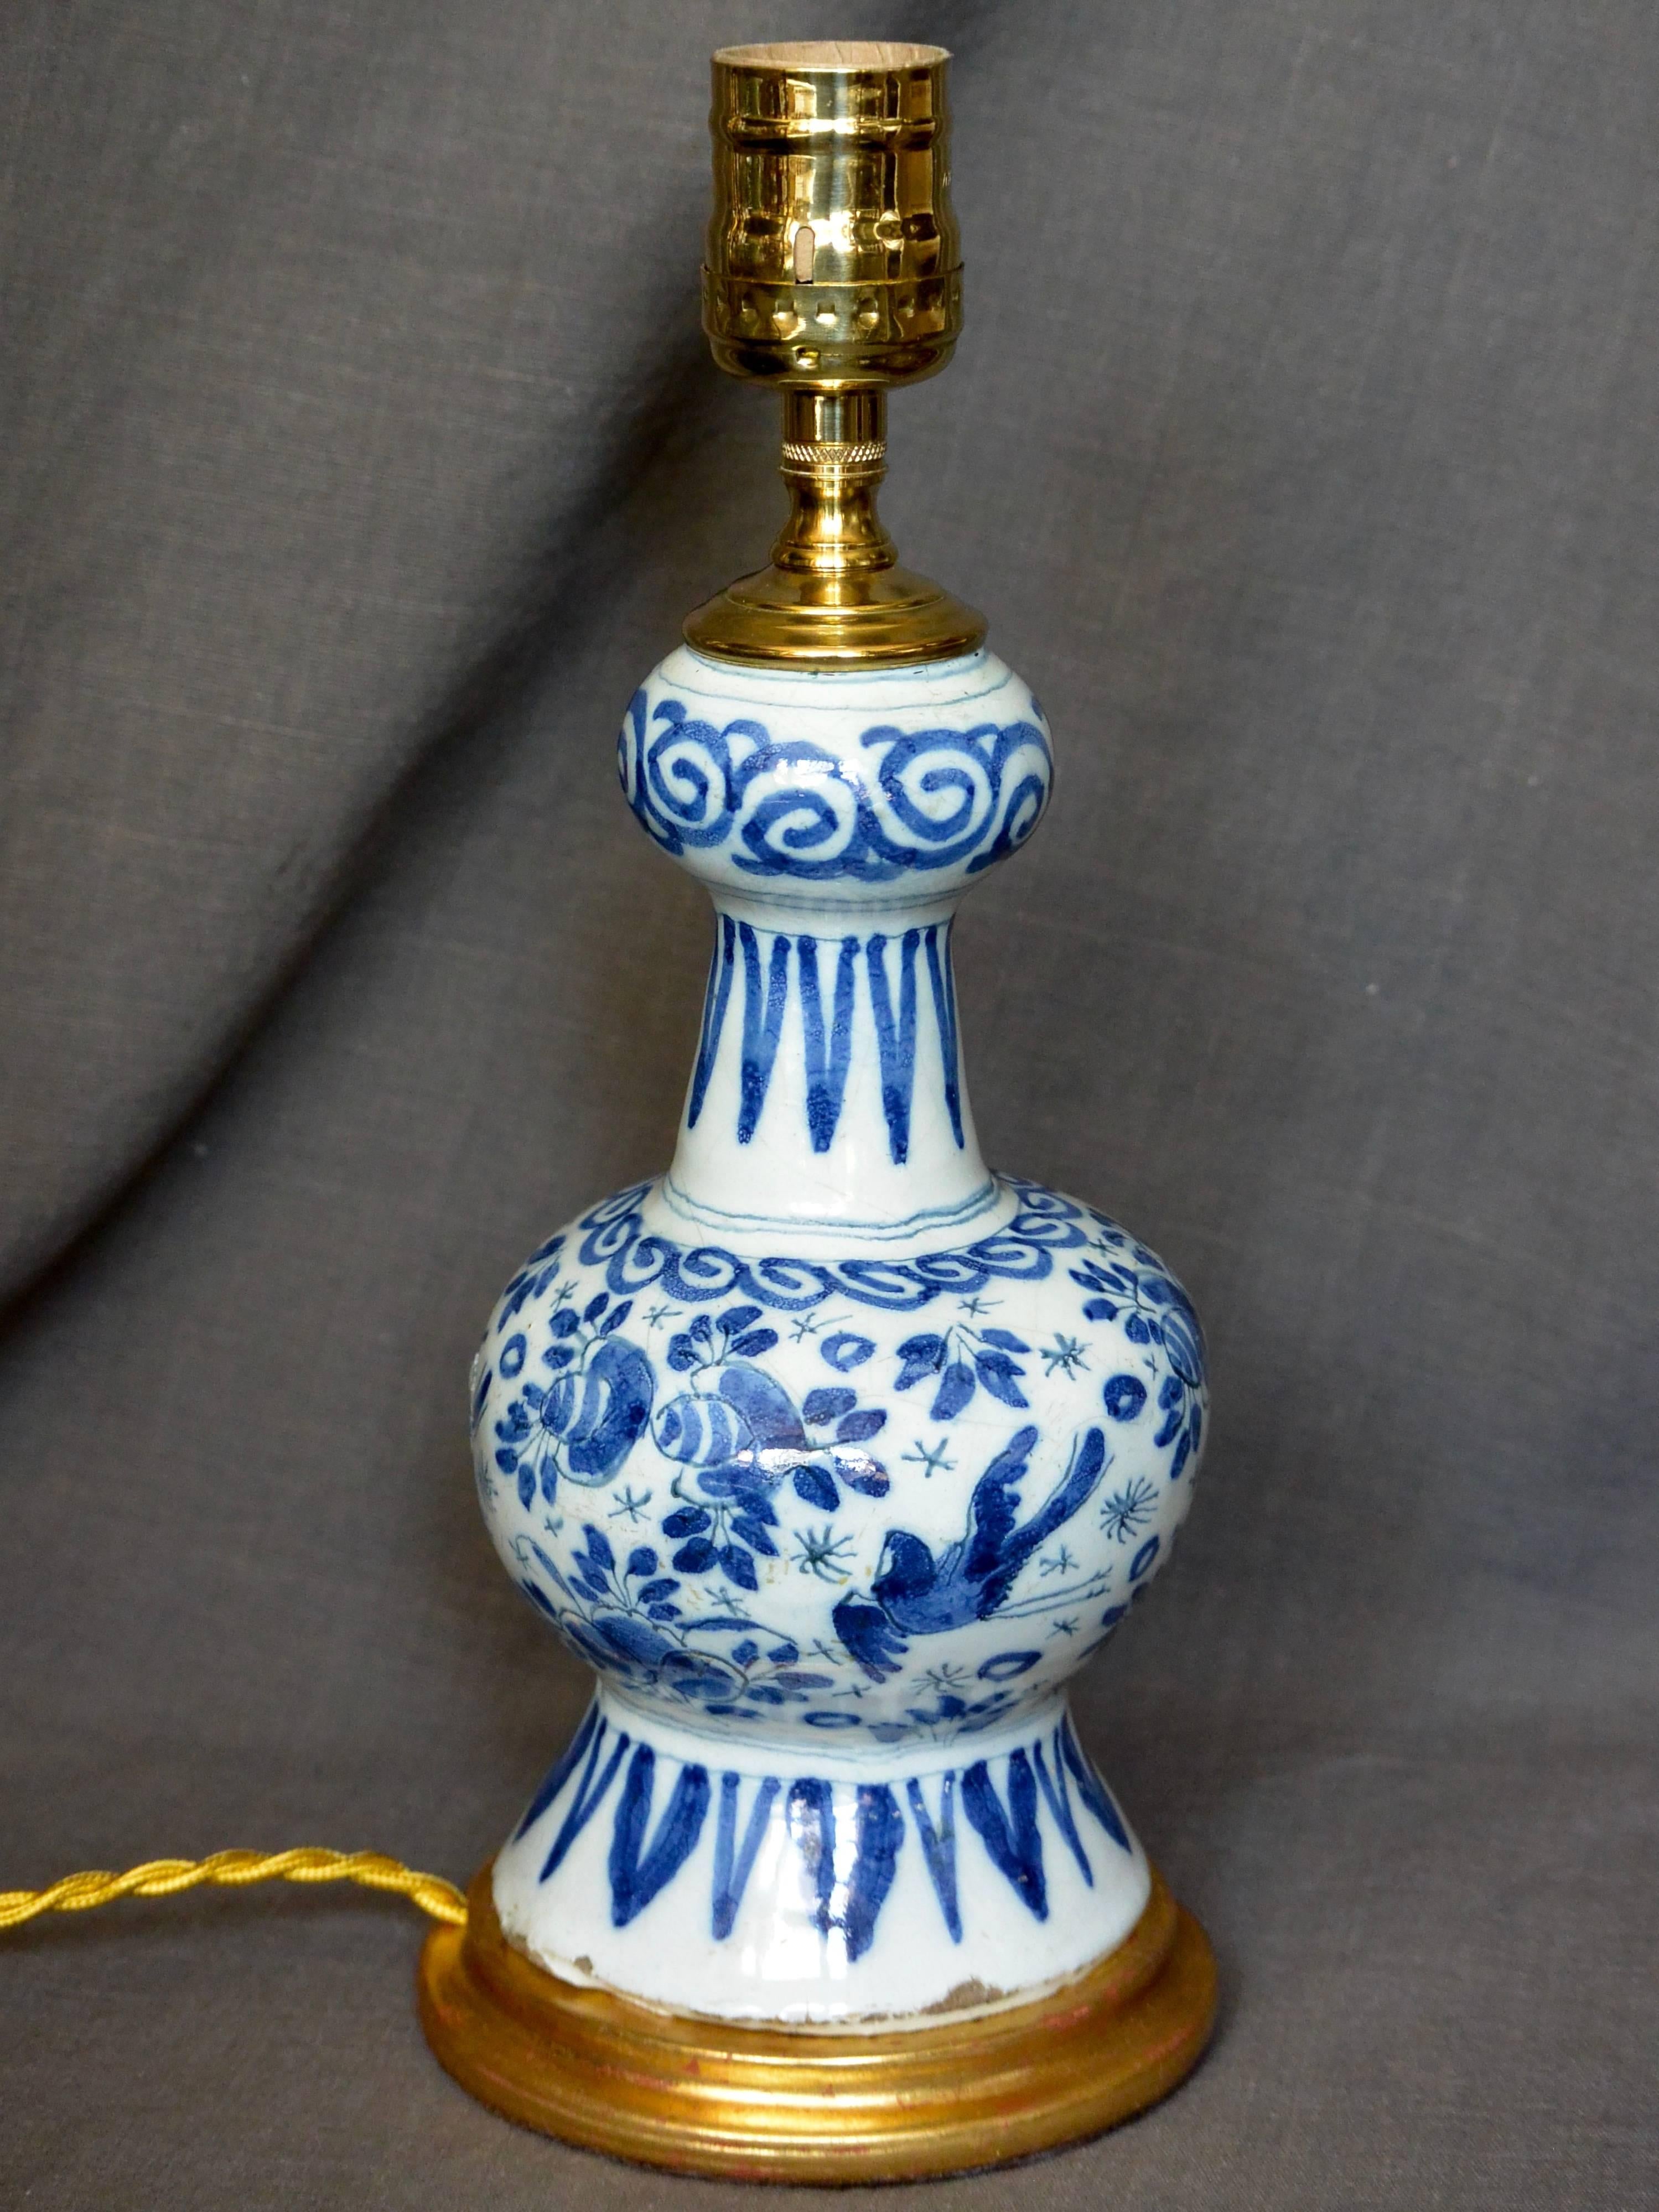 Lampe vase Delft hollandaise bleue et blanche sur base dorée à l'eau. Petit vase en faïence de Delft de forme balustre à décor floral délicat, oiseaux et bordures, monté en lampe sur base dorée à l'eau avec cordon et interrupteur en soie dorée.